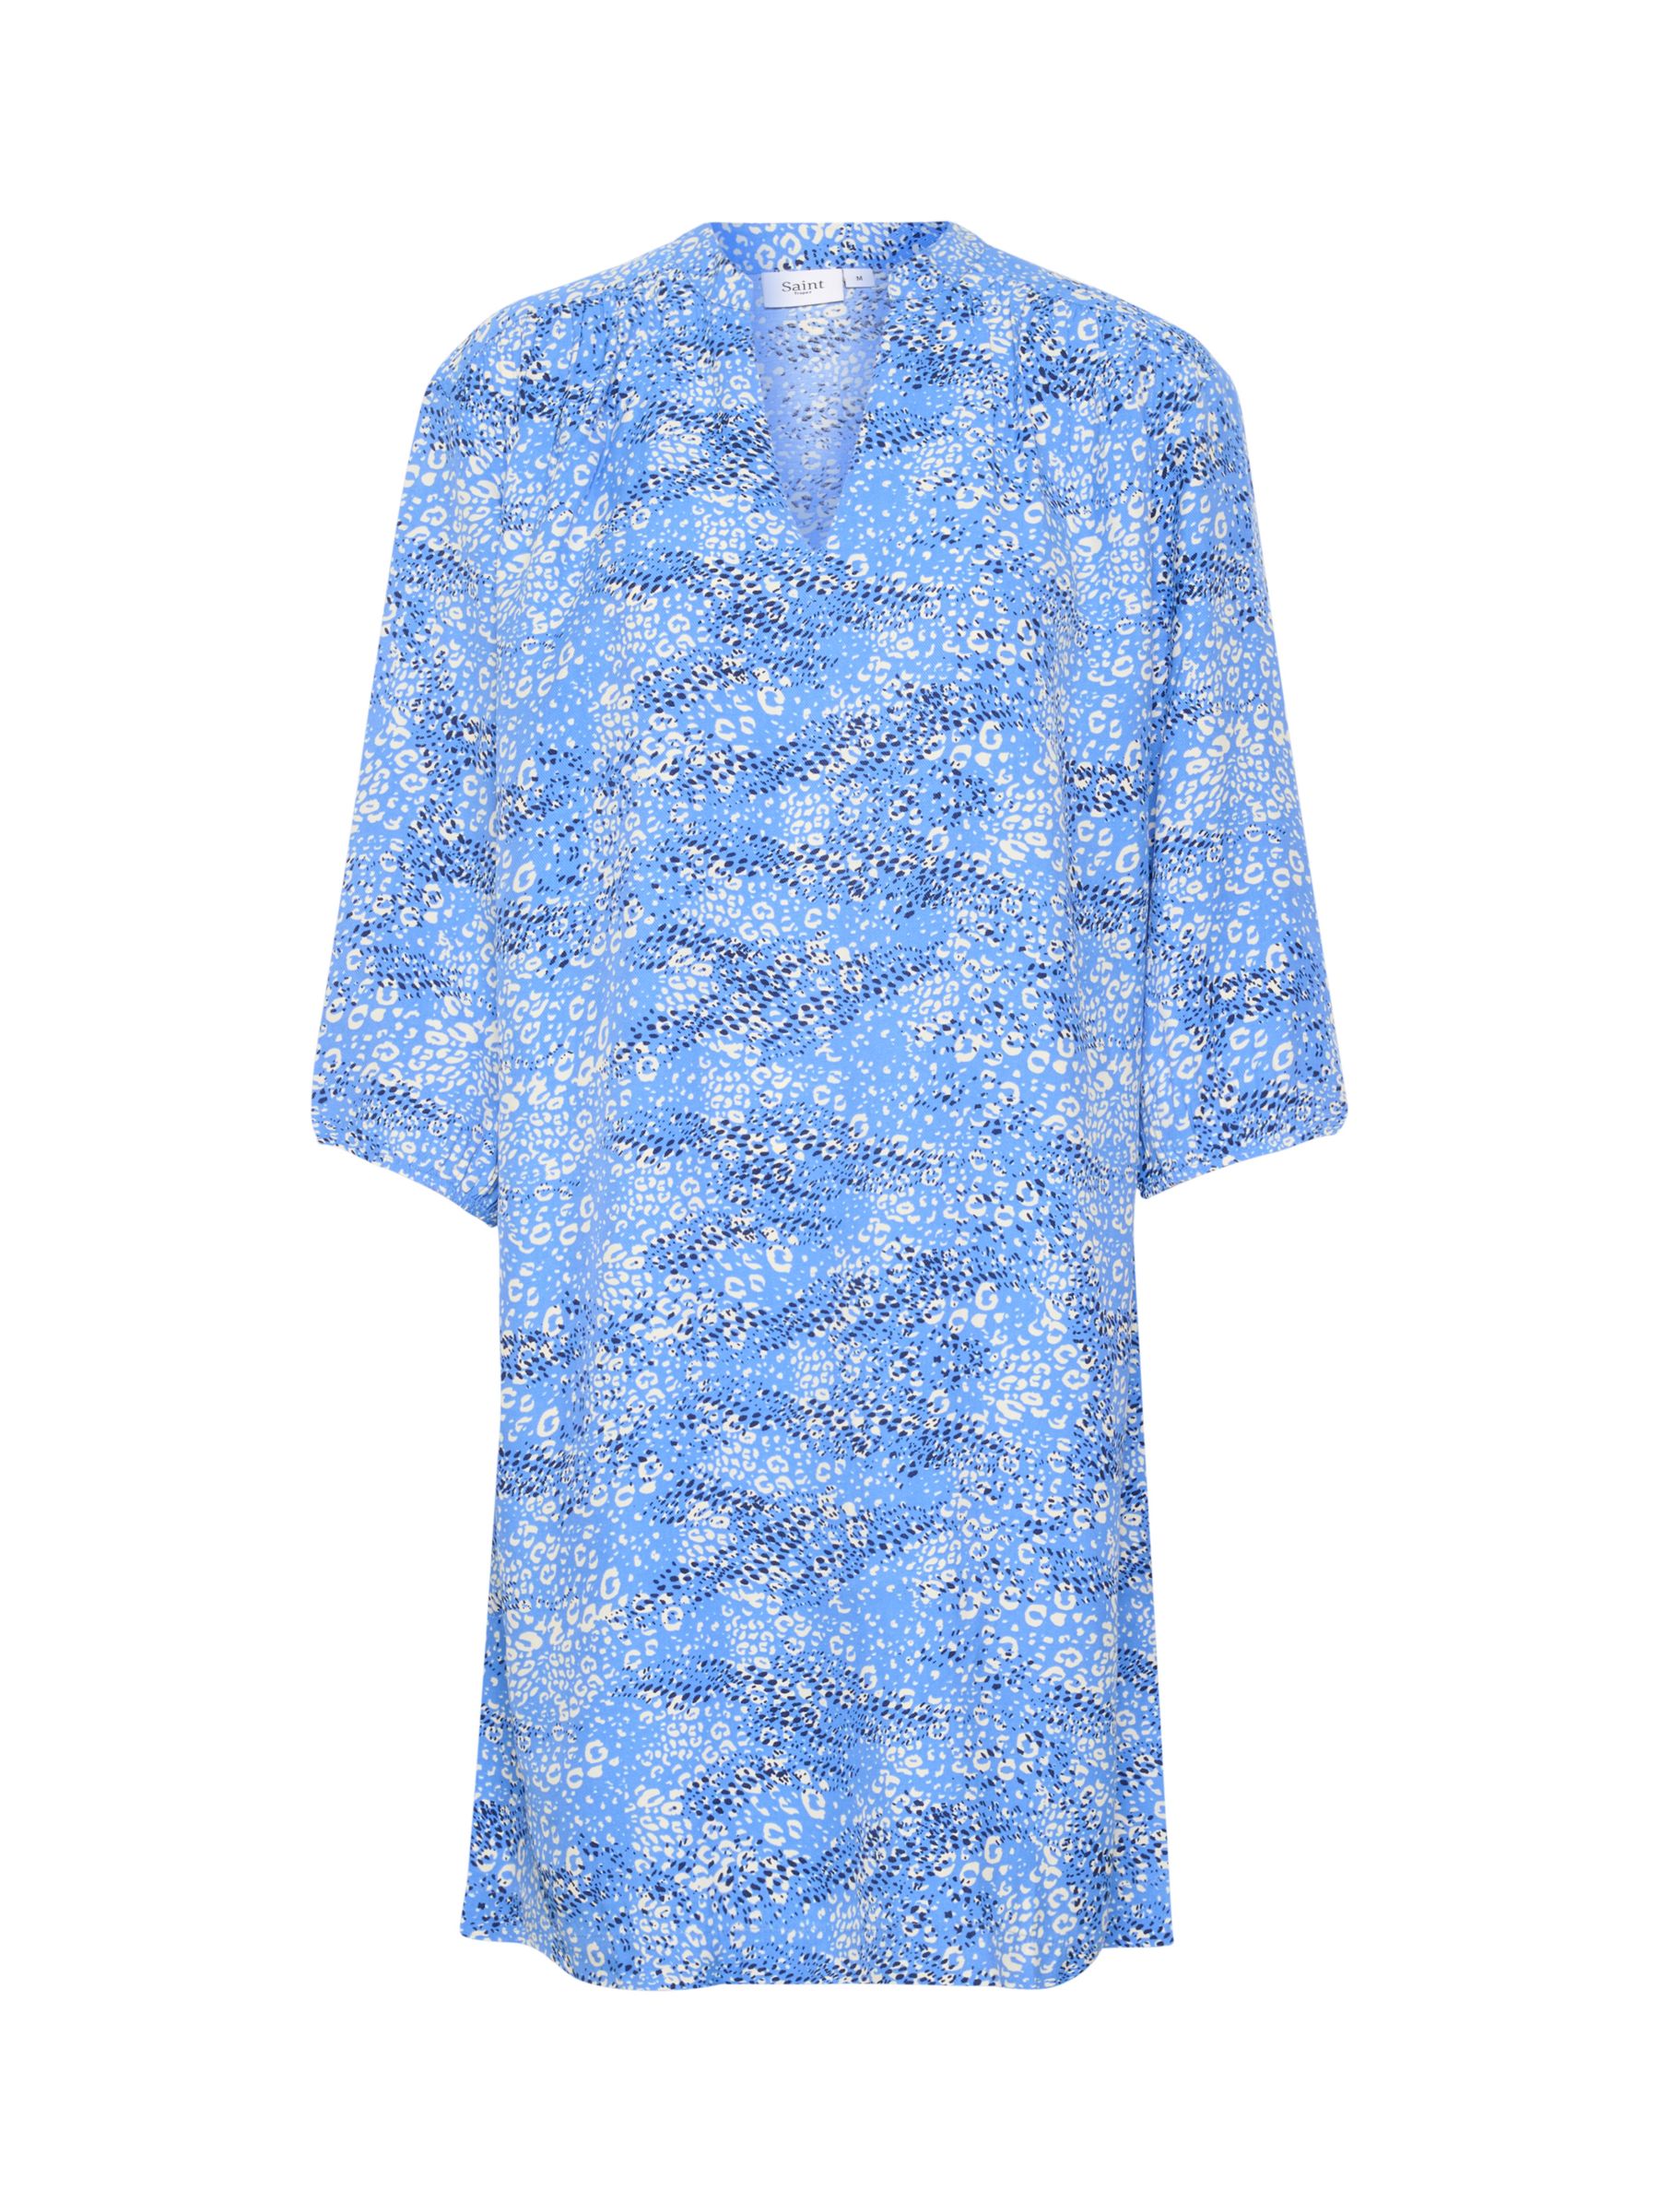 Saint Tropez Dacia Leopard Print Dress, Ultramarine, M